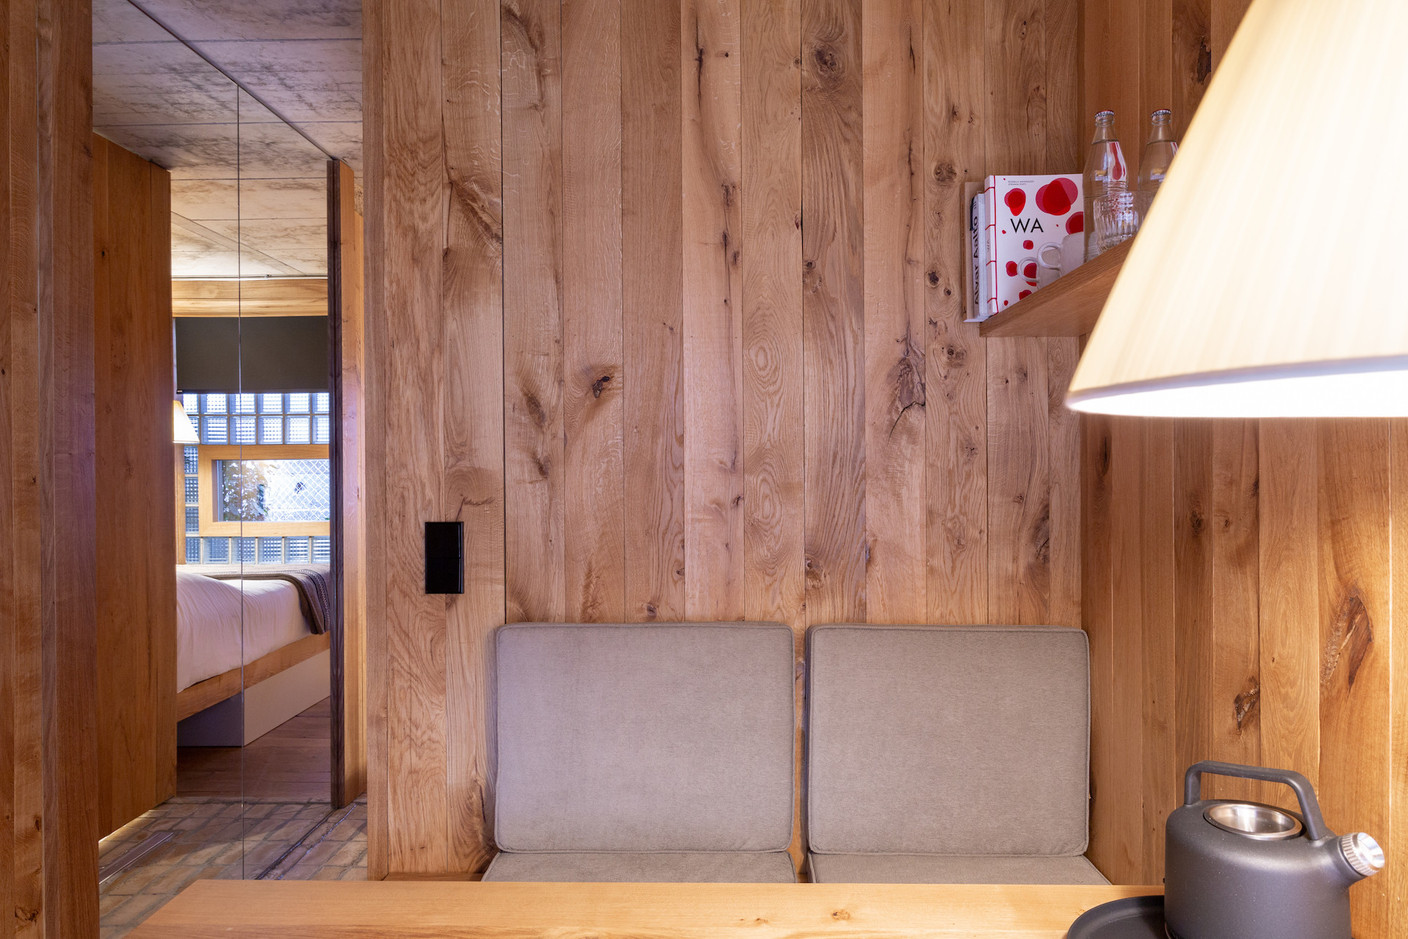 Le bois est omniprésent dans la chambre, un matériau reconnu pour sa chaleur et ses qualités acoustiques. (Photo: Patty Neu)